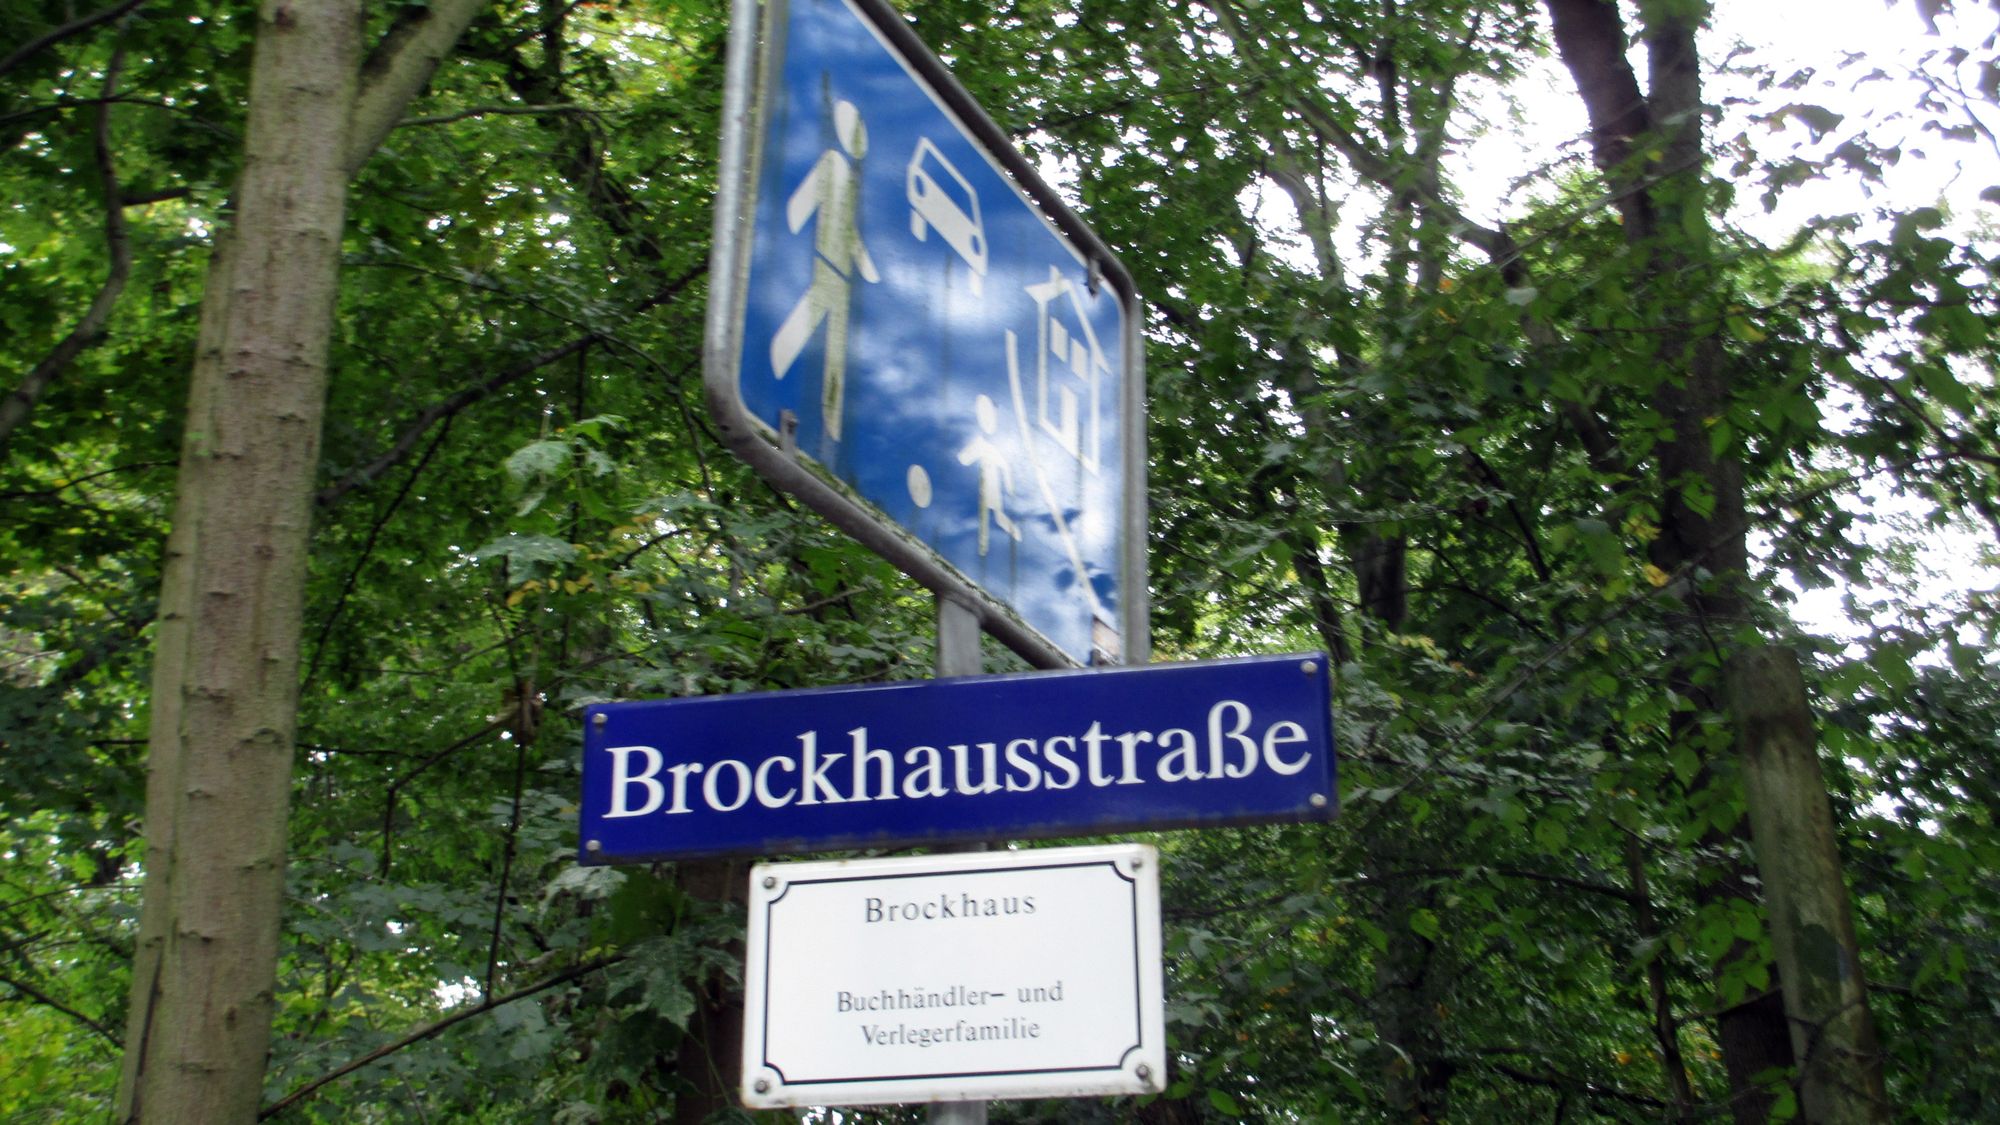 Die Brockhausstraße führt von der Bautzner Straße an der Saloppe vorbei hinunter an die Elbe zum Körnerweg